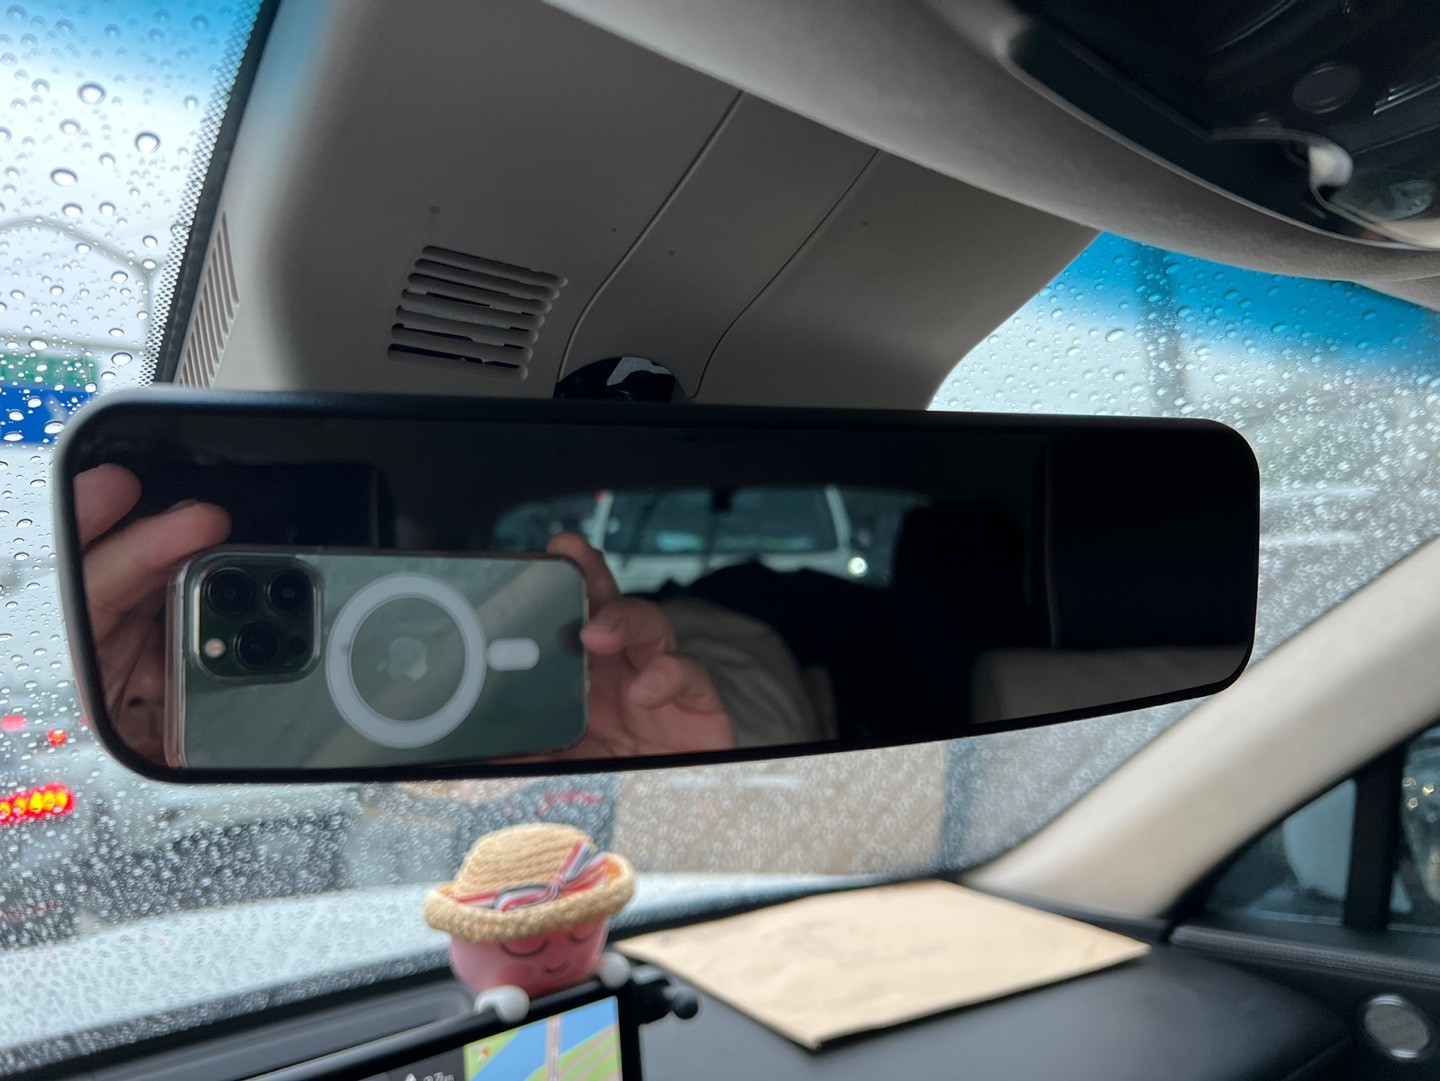 자동차 미러, 백미러, 자동차, 거울이(가) 표시된 사진

자동 생성된 설명